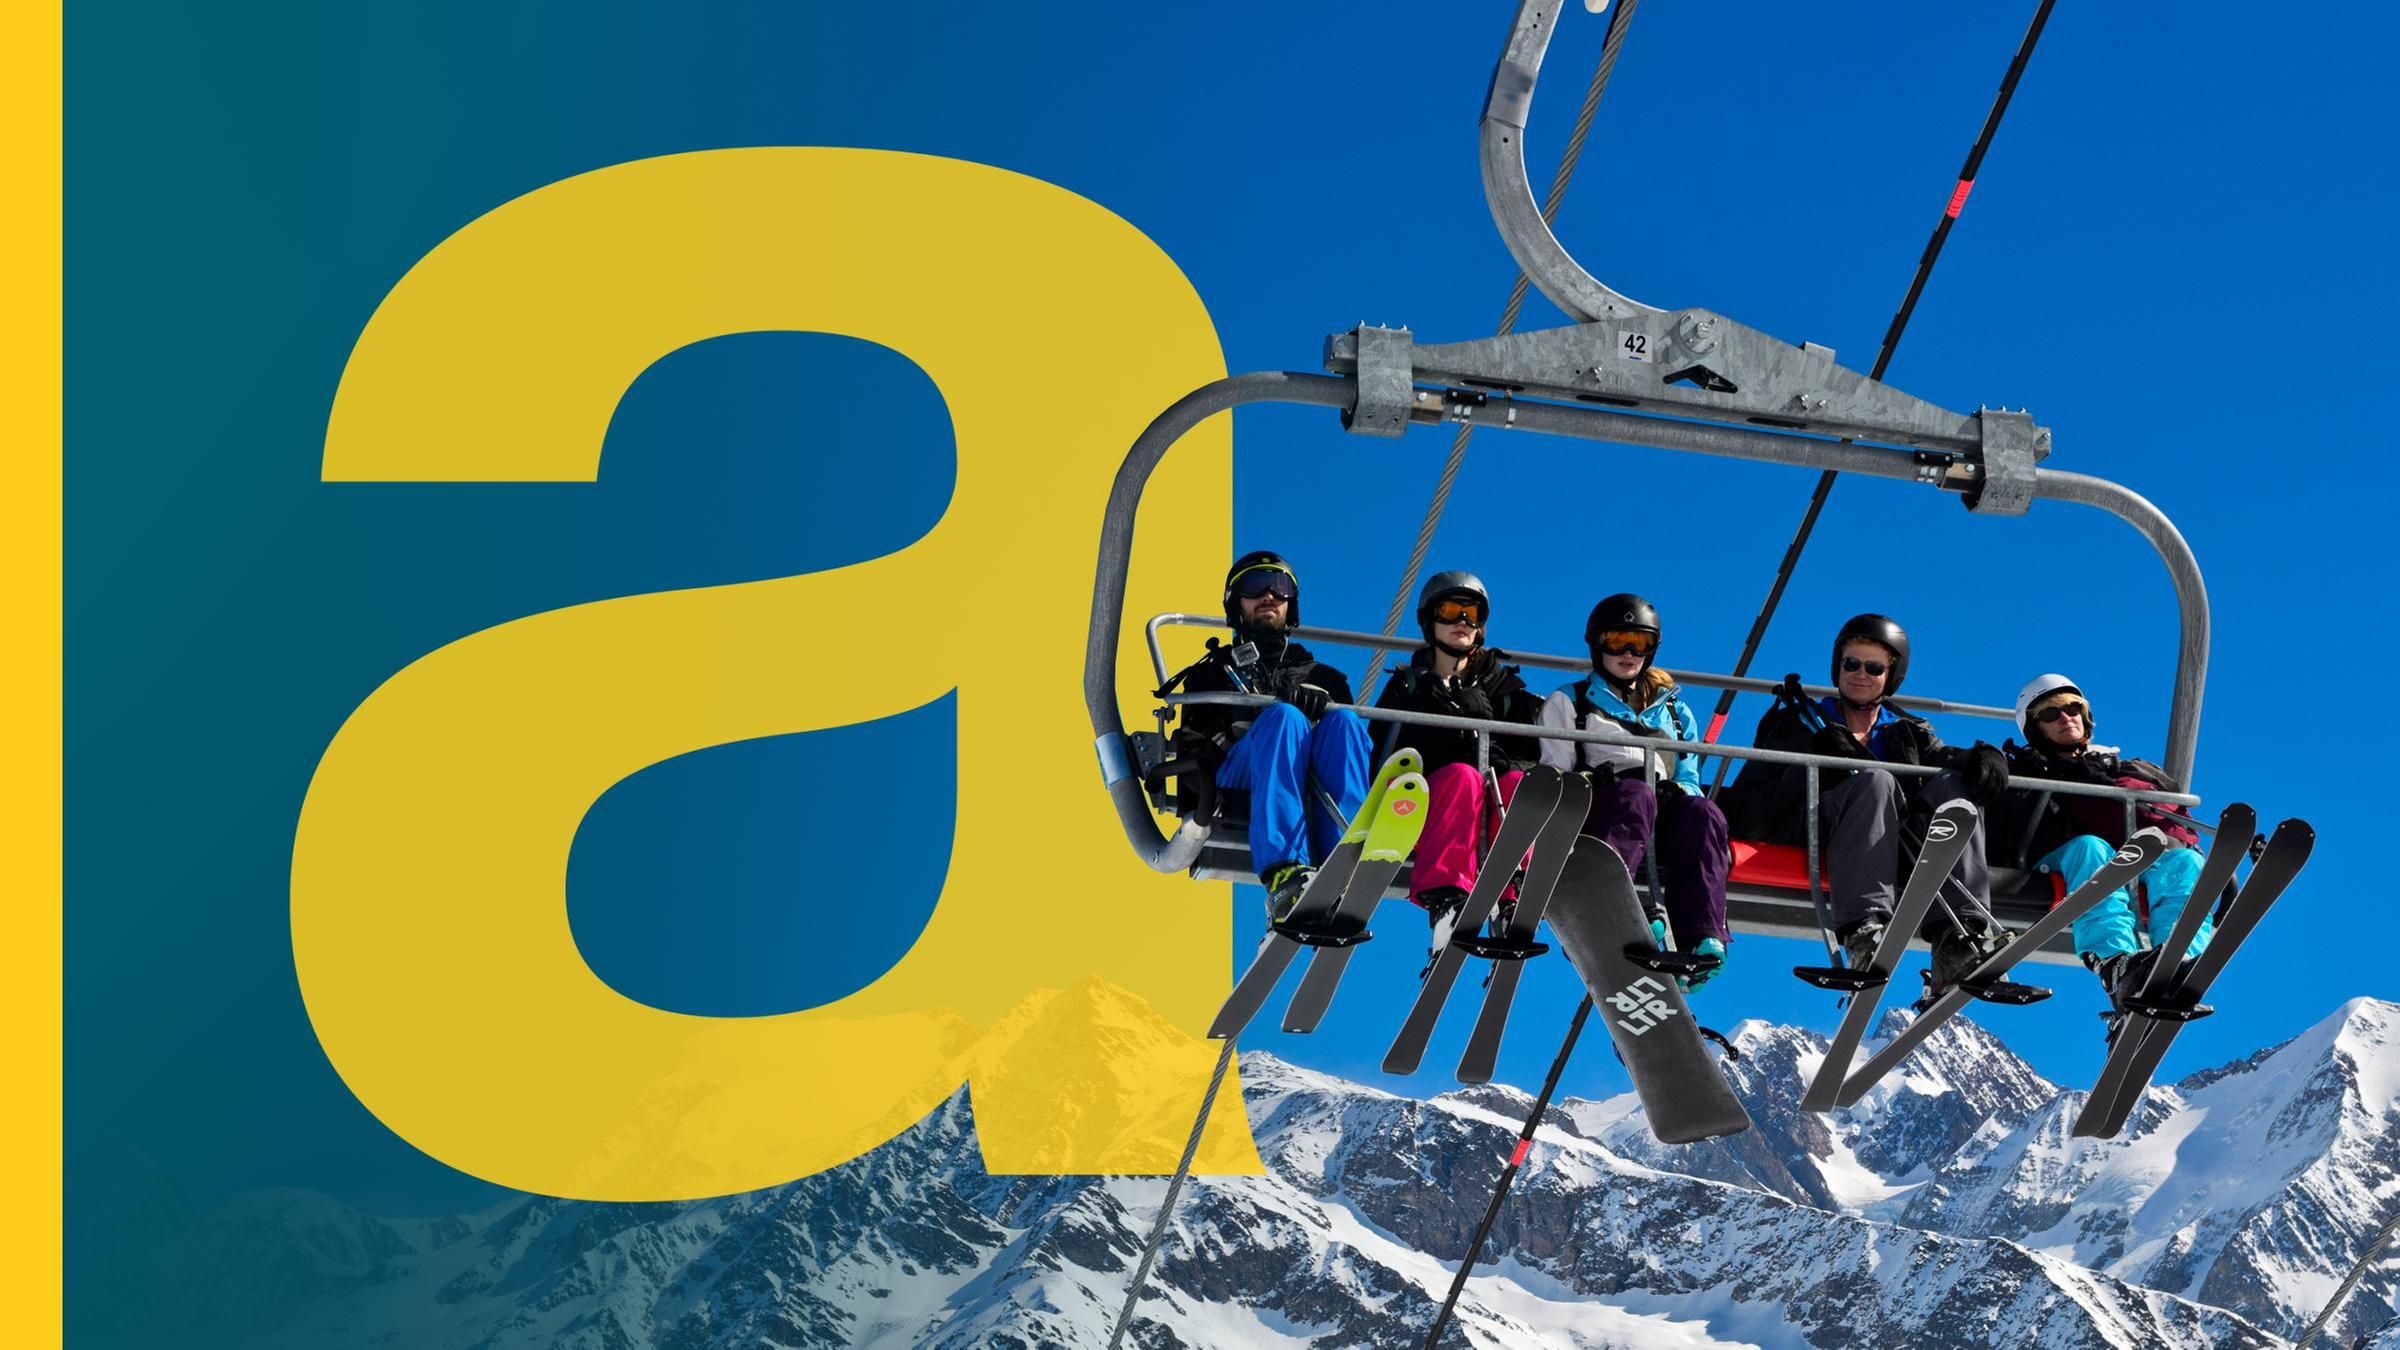 Auf der linken Seite ist das Logo vom Auslandsjournal, rechts ist ein voll besetzter Ski-Lift mit Skifahrern.